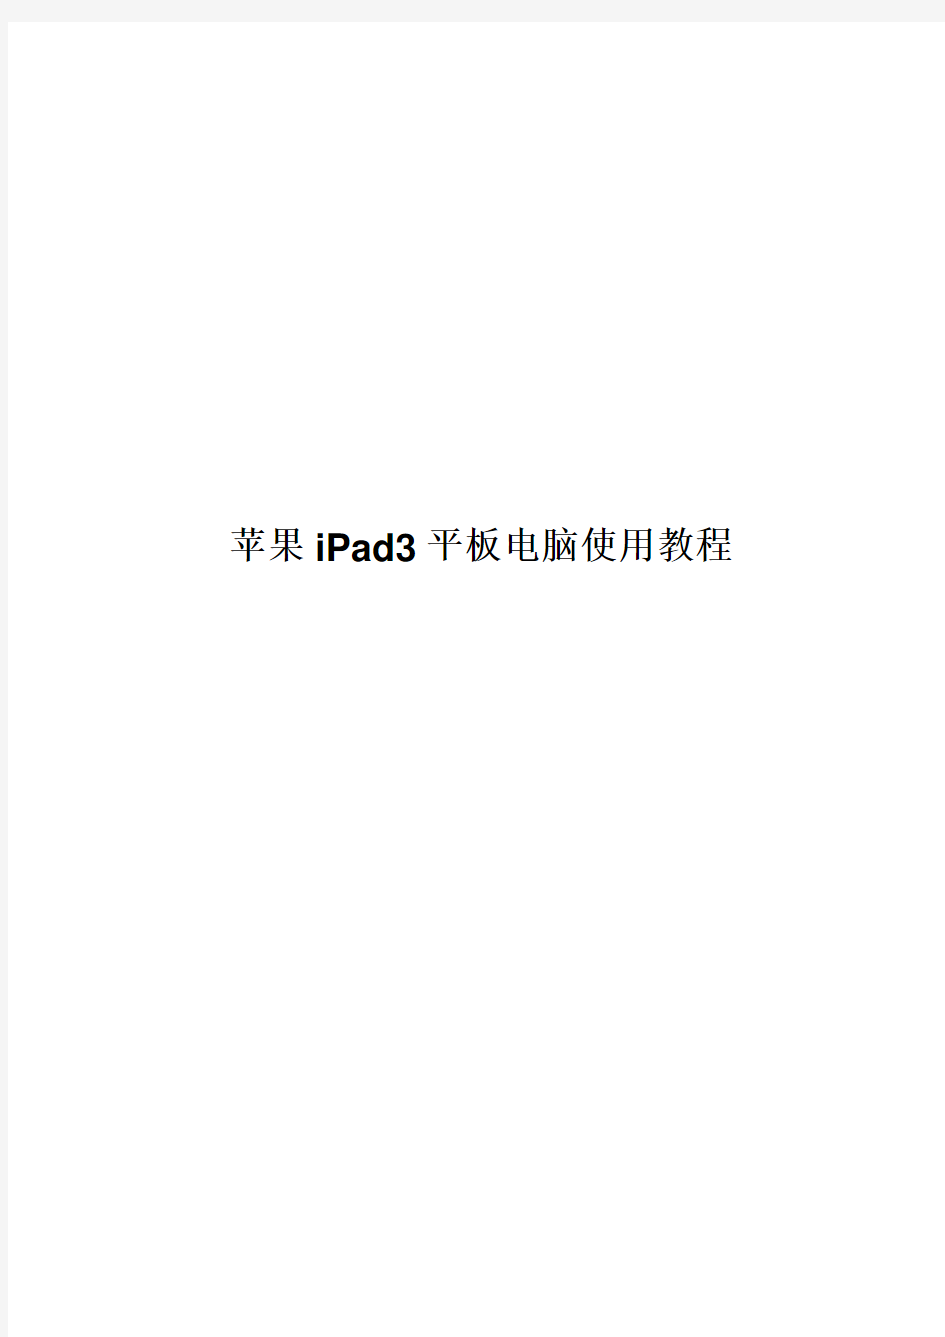 苹果iPad3平板电脑说明书